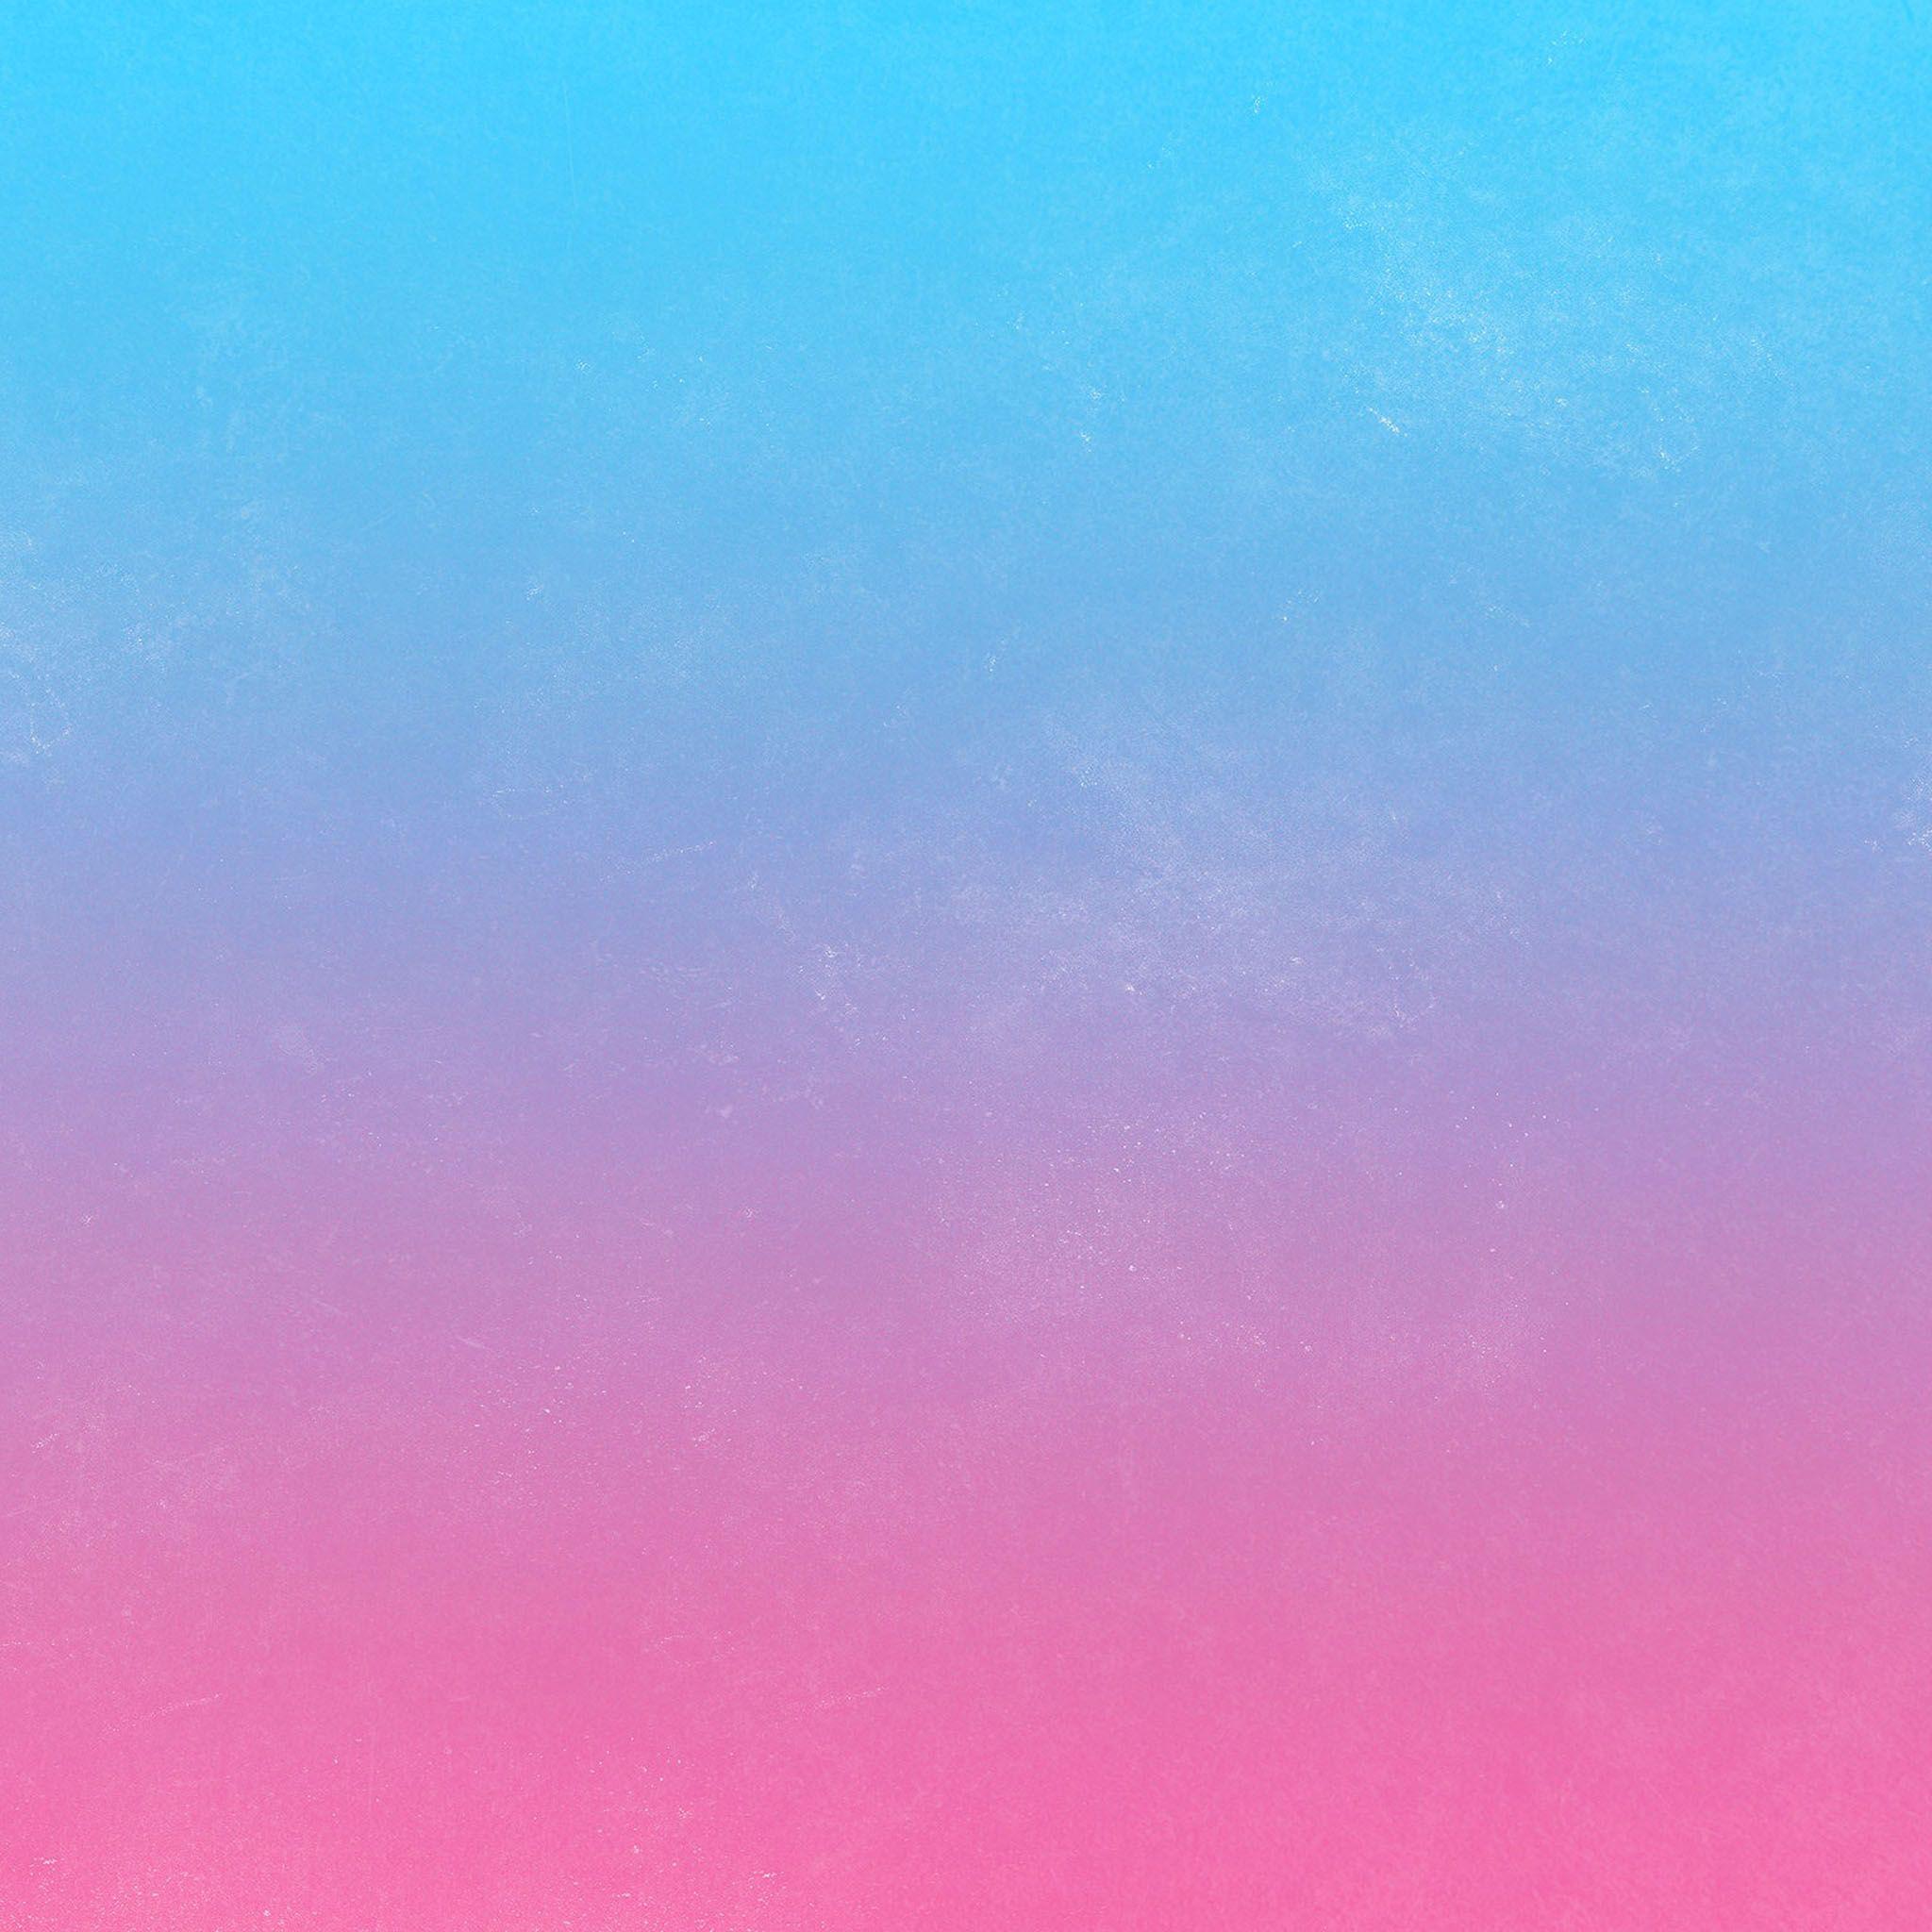 Hình nền xanh hồng mới nhất chắc chắn sẽ làm bạn phải say mê với sự kết hợp tuyệt vời giữa màu xanh trầm ấm và hồng pastel dịu dàng. Dễ dàng tạo nên sự khác biệt với bất kỳ thiết bị di động nào, hình nền xanh hồng sẽ hoàn toàn đem đến cho bạn một phong cách thời thượng và nổi bật. Hãy truy cập ngay để khám phá những mẫu hình nền xanh hồng này nhé.